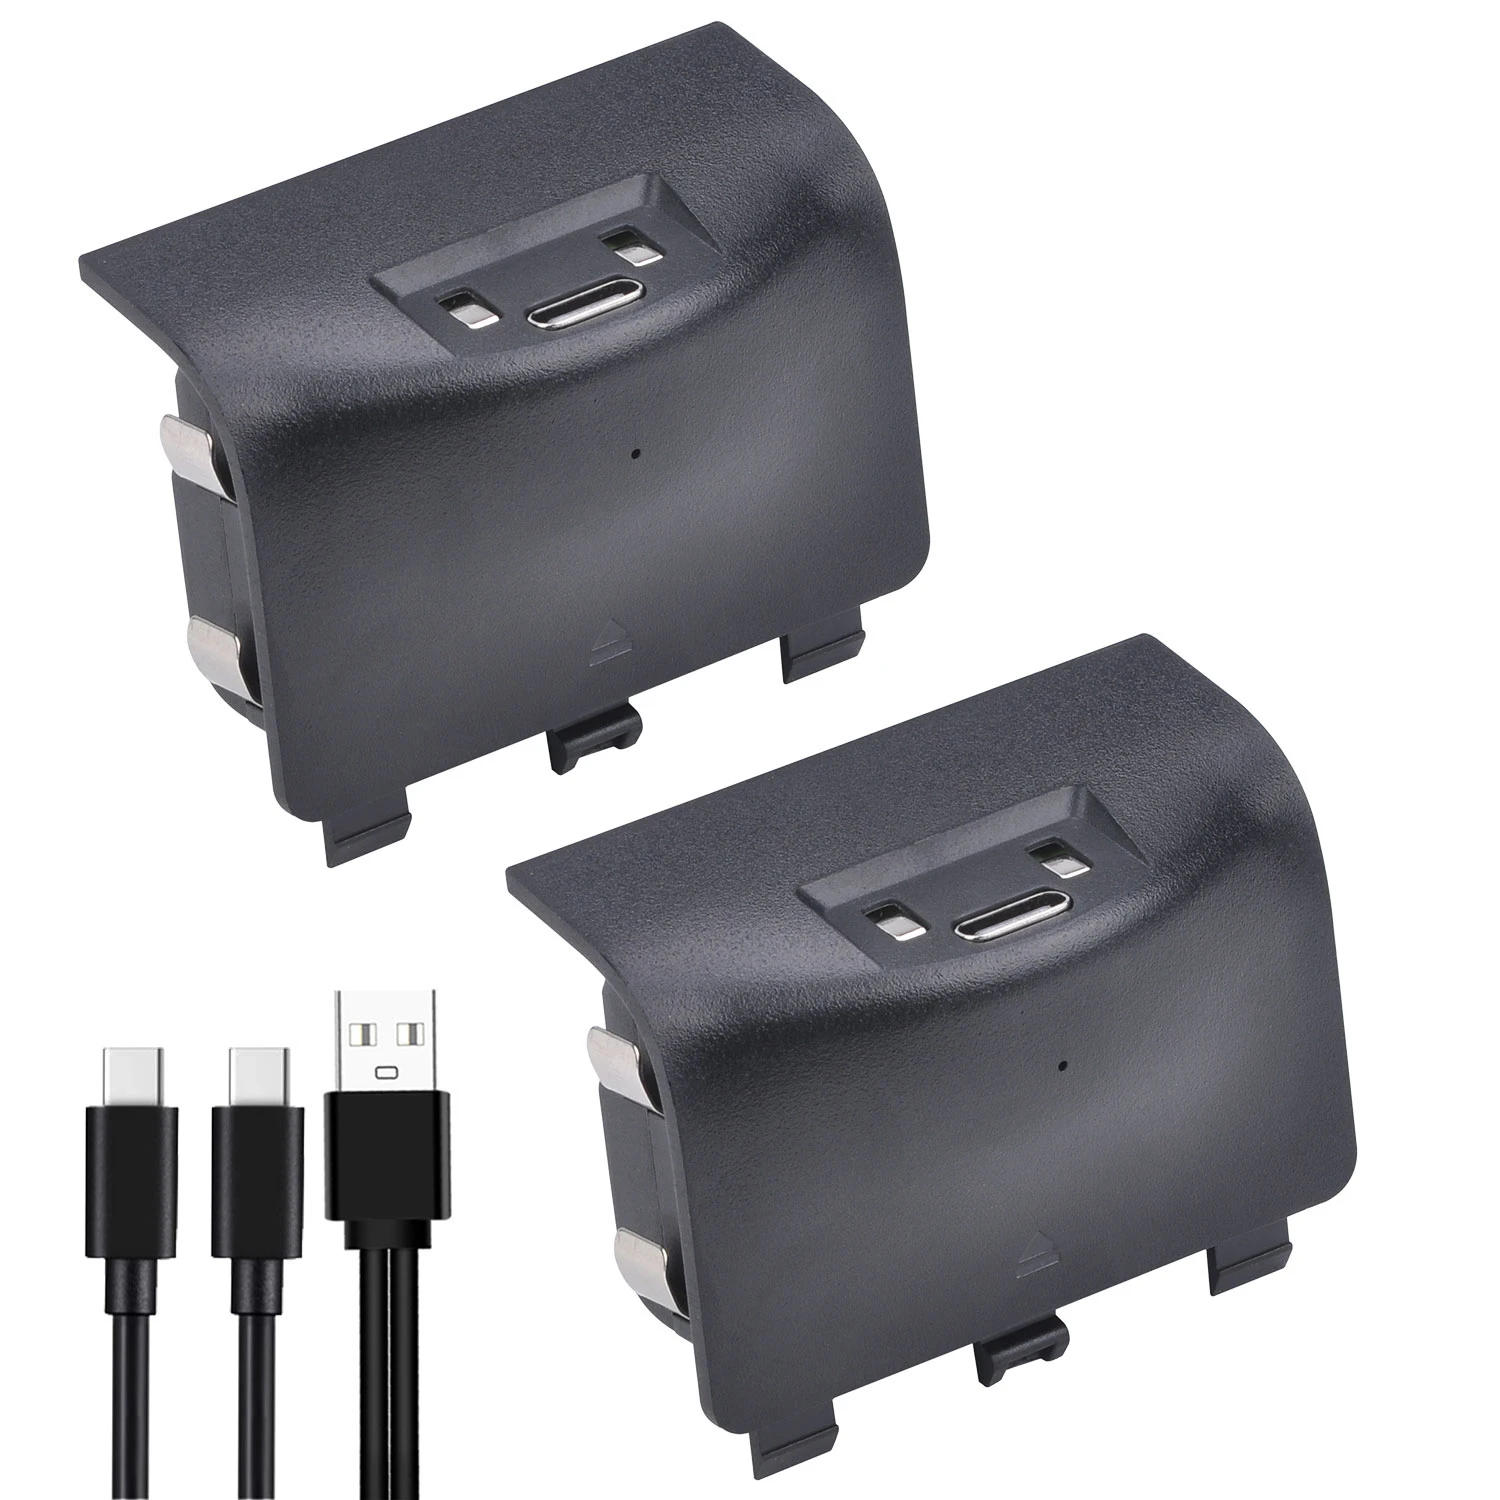 Comprar Pack Batería Recargable Mandos Blackfire + Cable para Xbox Series X/S  · Ardistel · Hipercor